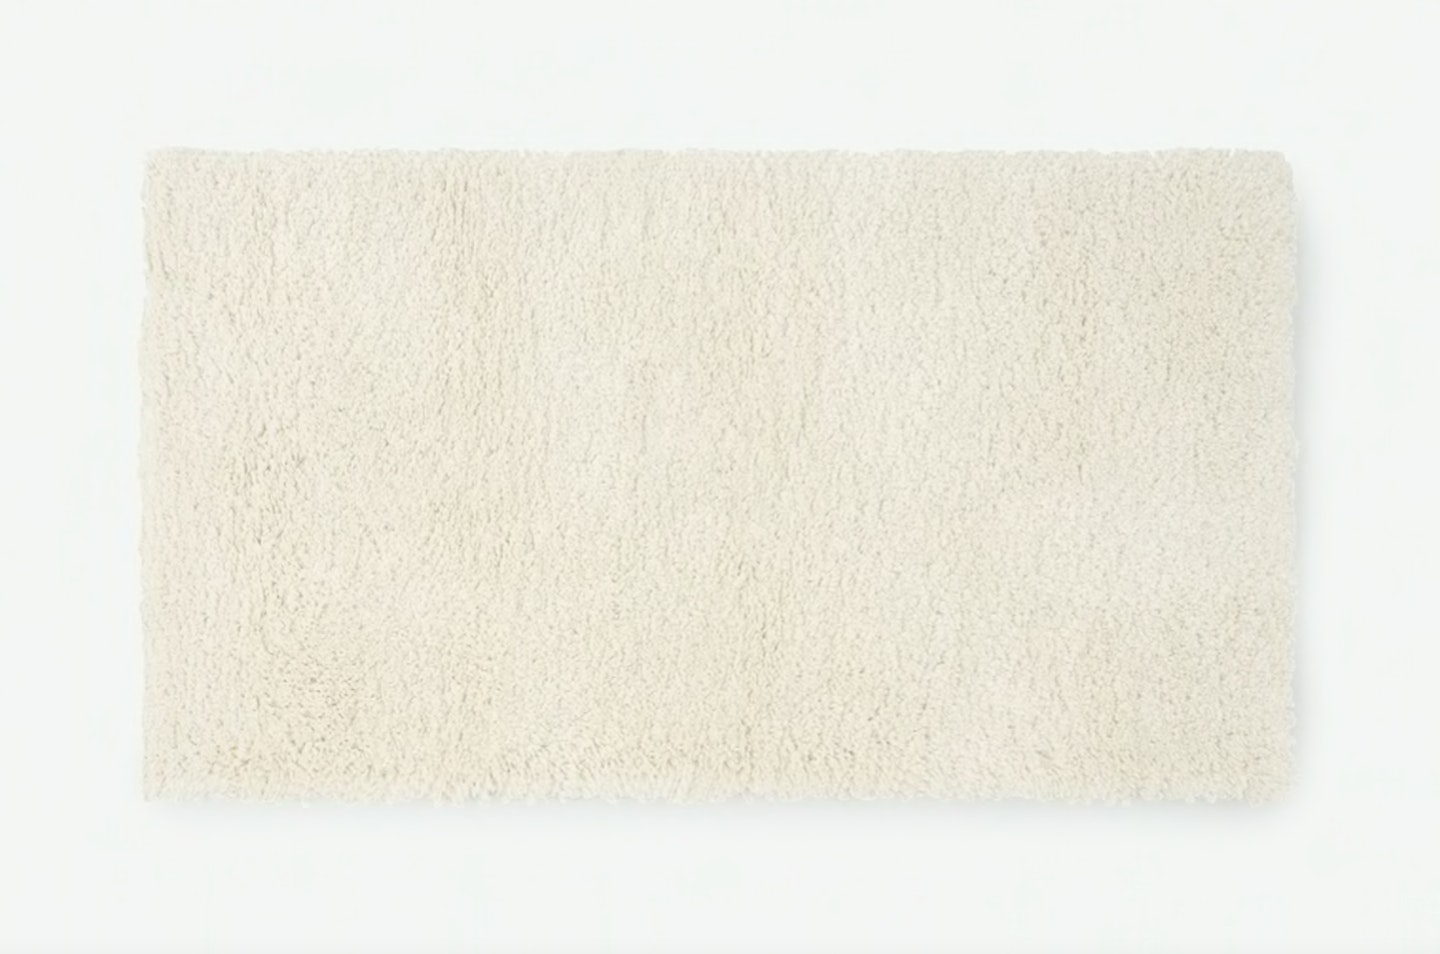 MADE, Mala Pile Bedside Runner, 60 x 110 cm, Off-White, £55